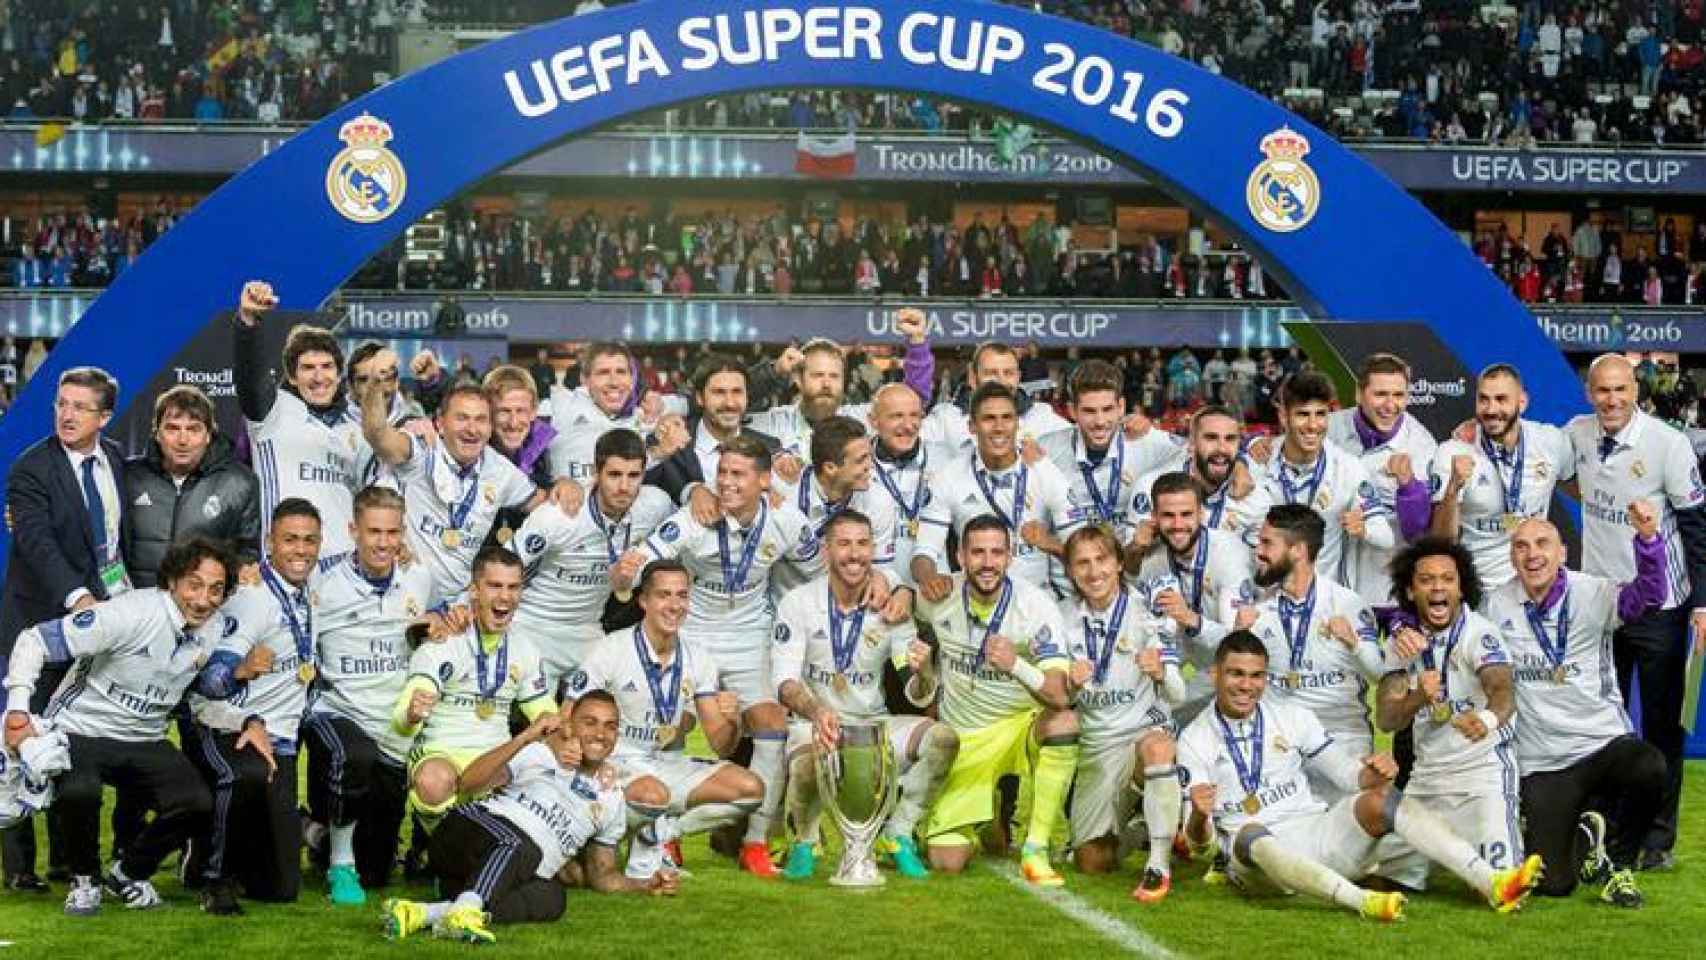 La Supercopa de Europa, primer título del Madrid esta temporada.